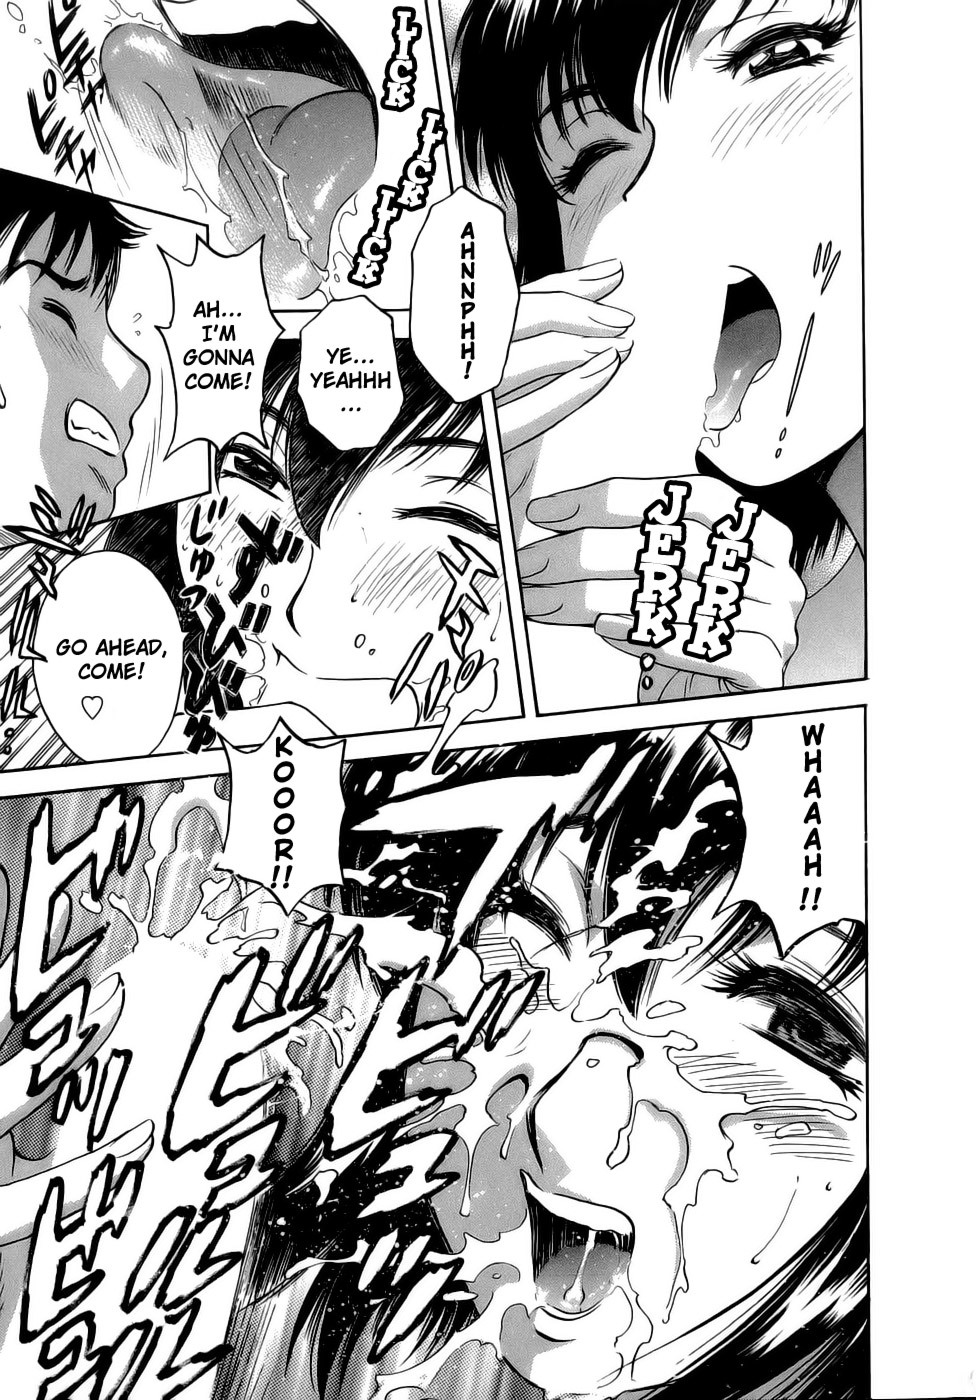 Mo-Retsu! Boin SenseiVol.1 42 hentai manga